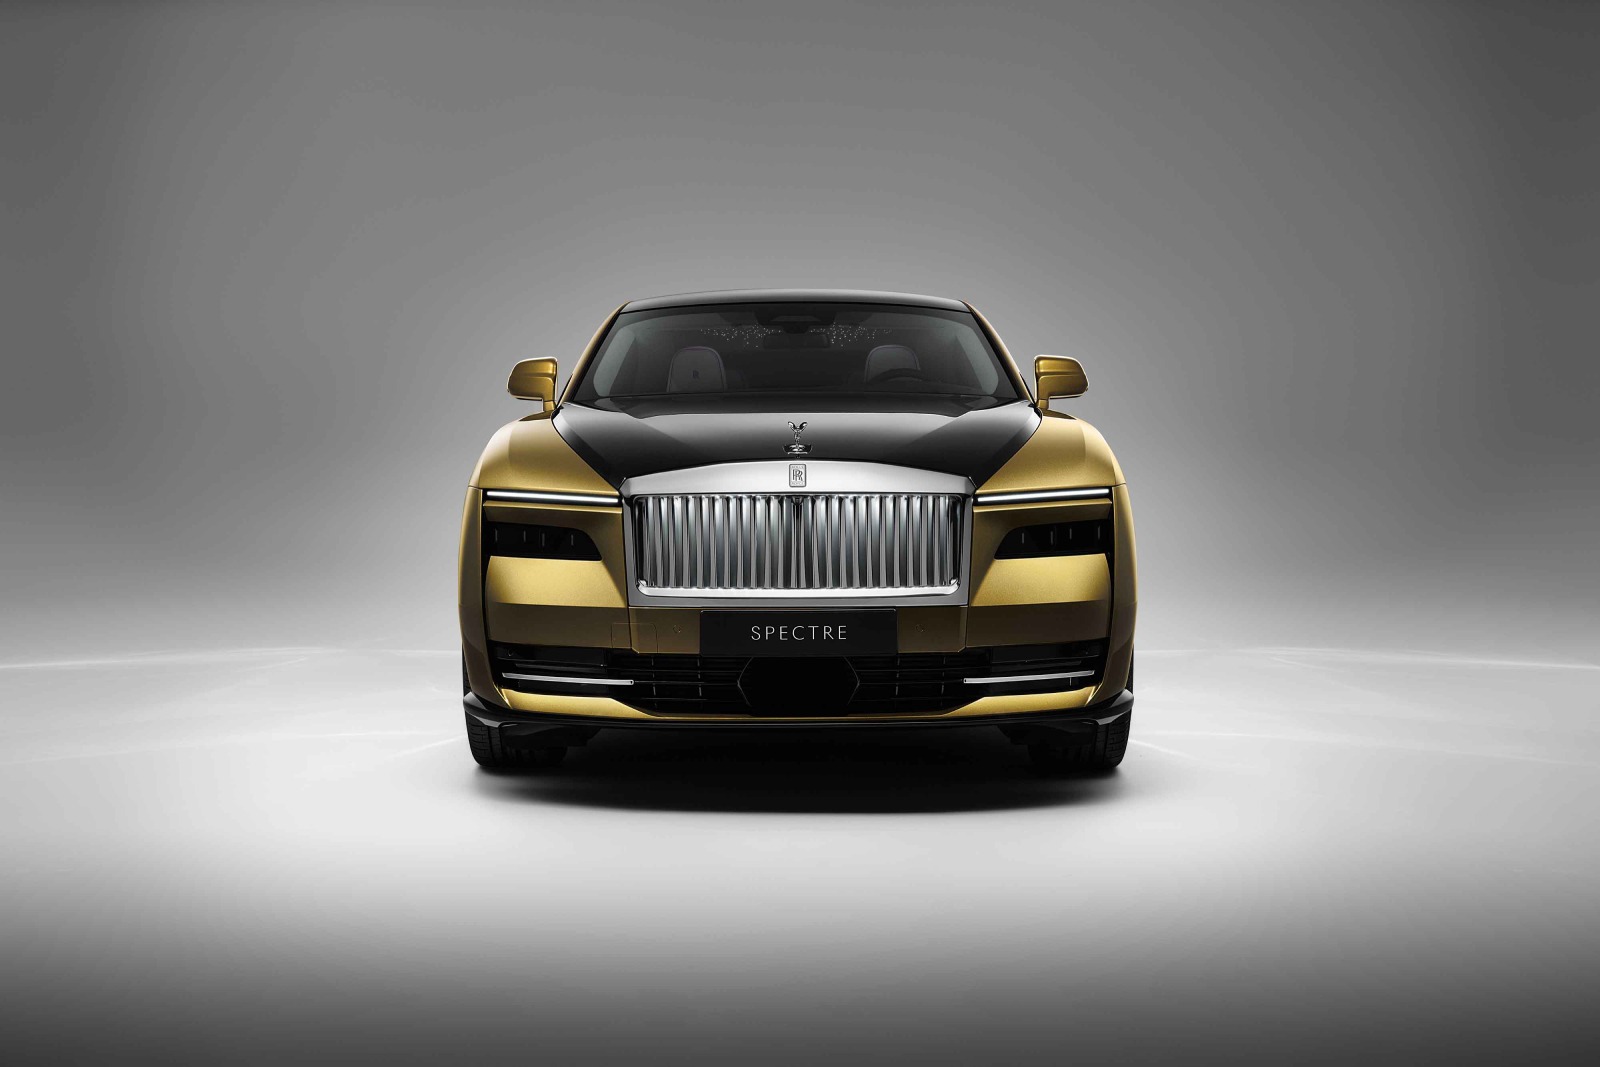 Presenta un capó largo y una línea de techo elegante, característica constante en todos los vehículos de Rolls Royce. - imagen 3